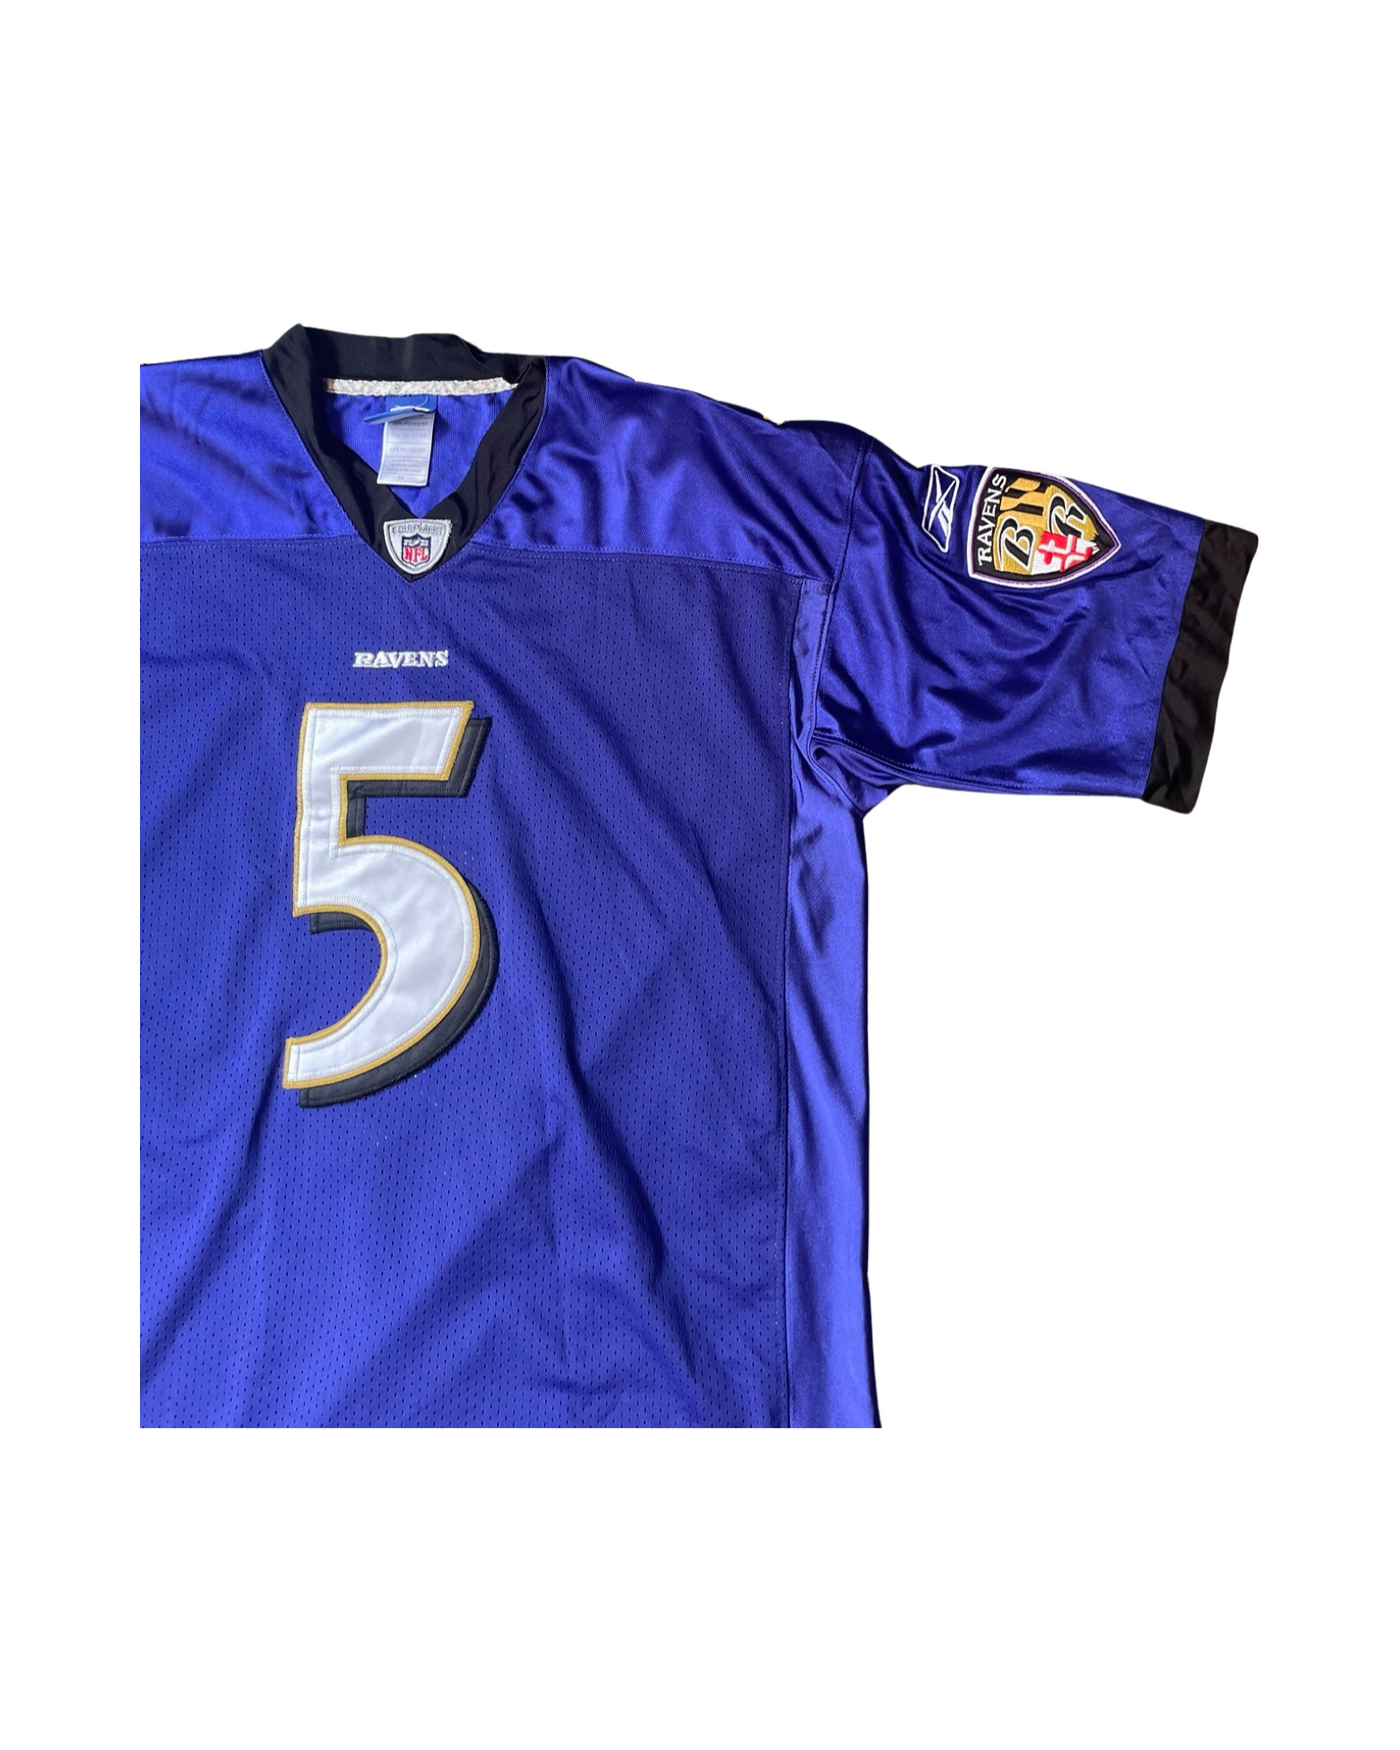 Vintage NFL Baltimore Ravens Jersey